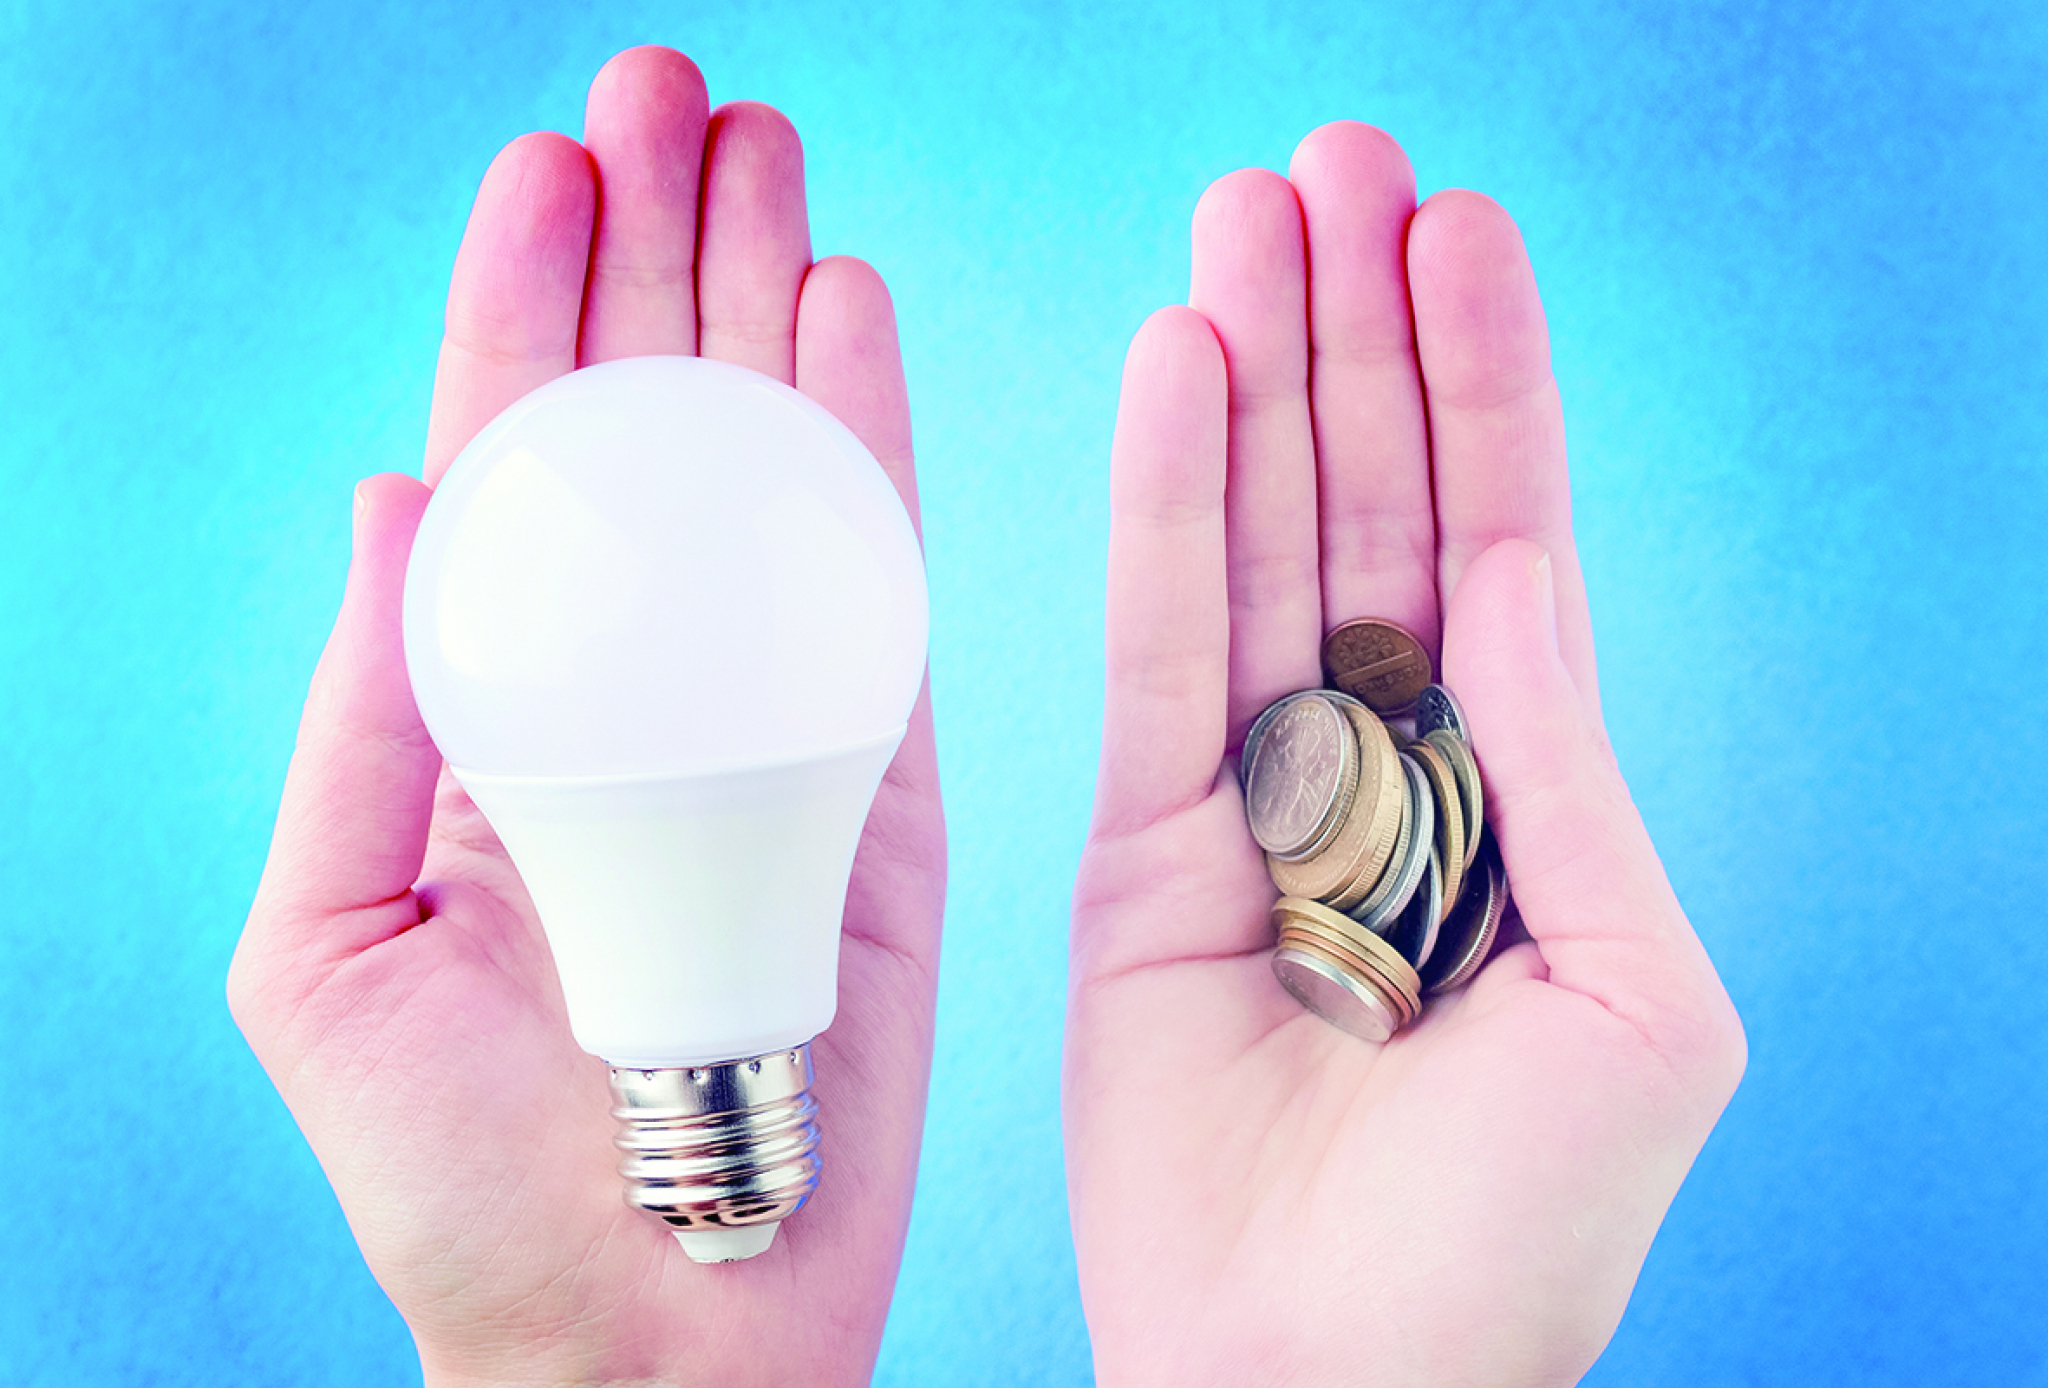 LAKI NAČINI DA SMANJITE RAČUN ZA STRUJU Pametno trošite električnu energiju i uštedite novac